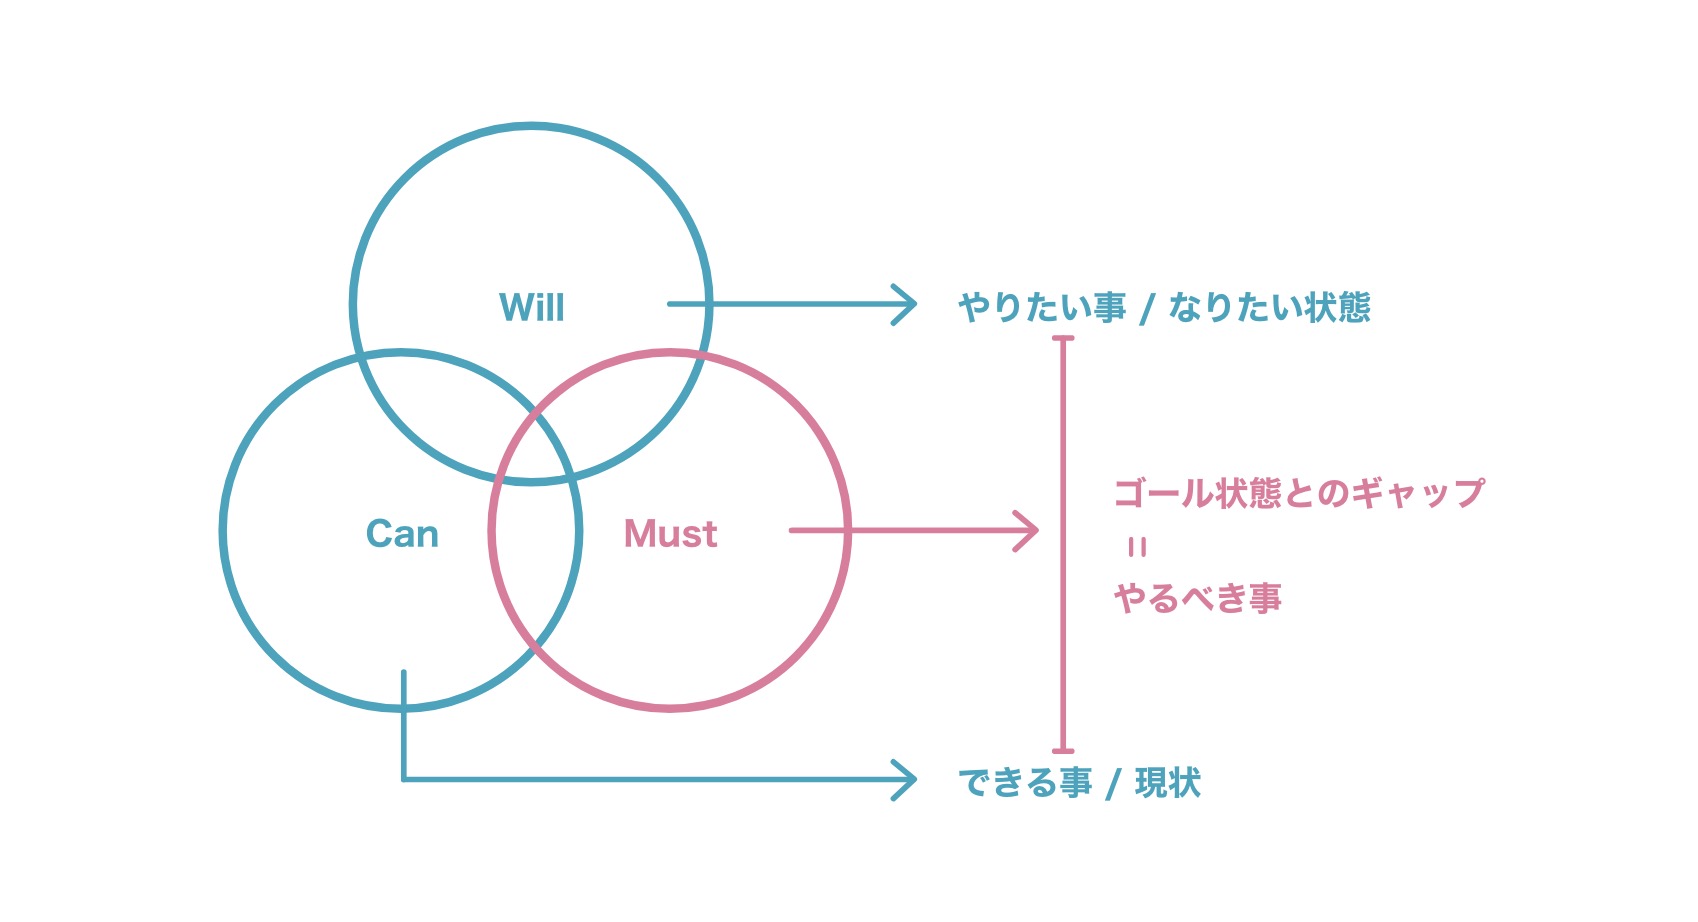 WCMフレームワークの解説図